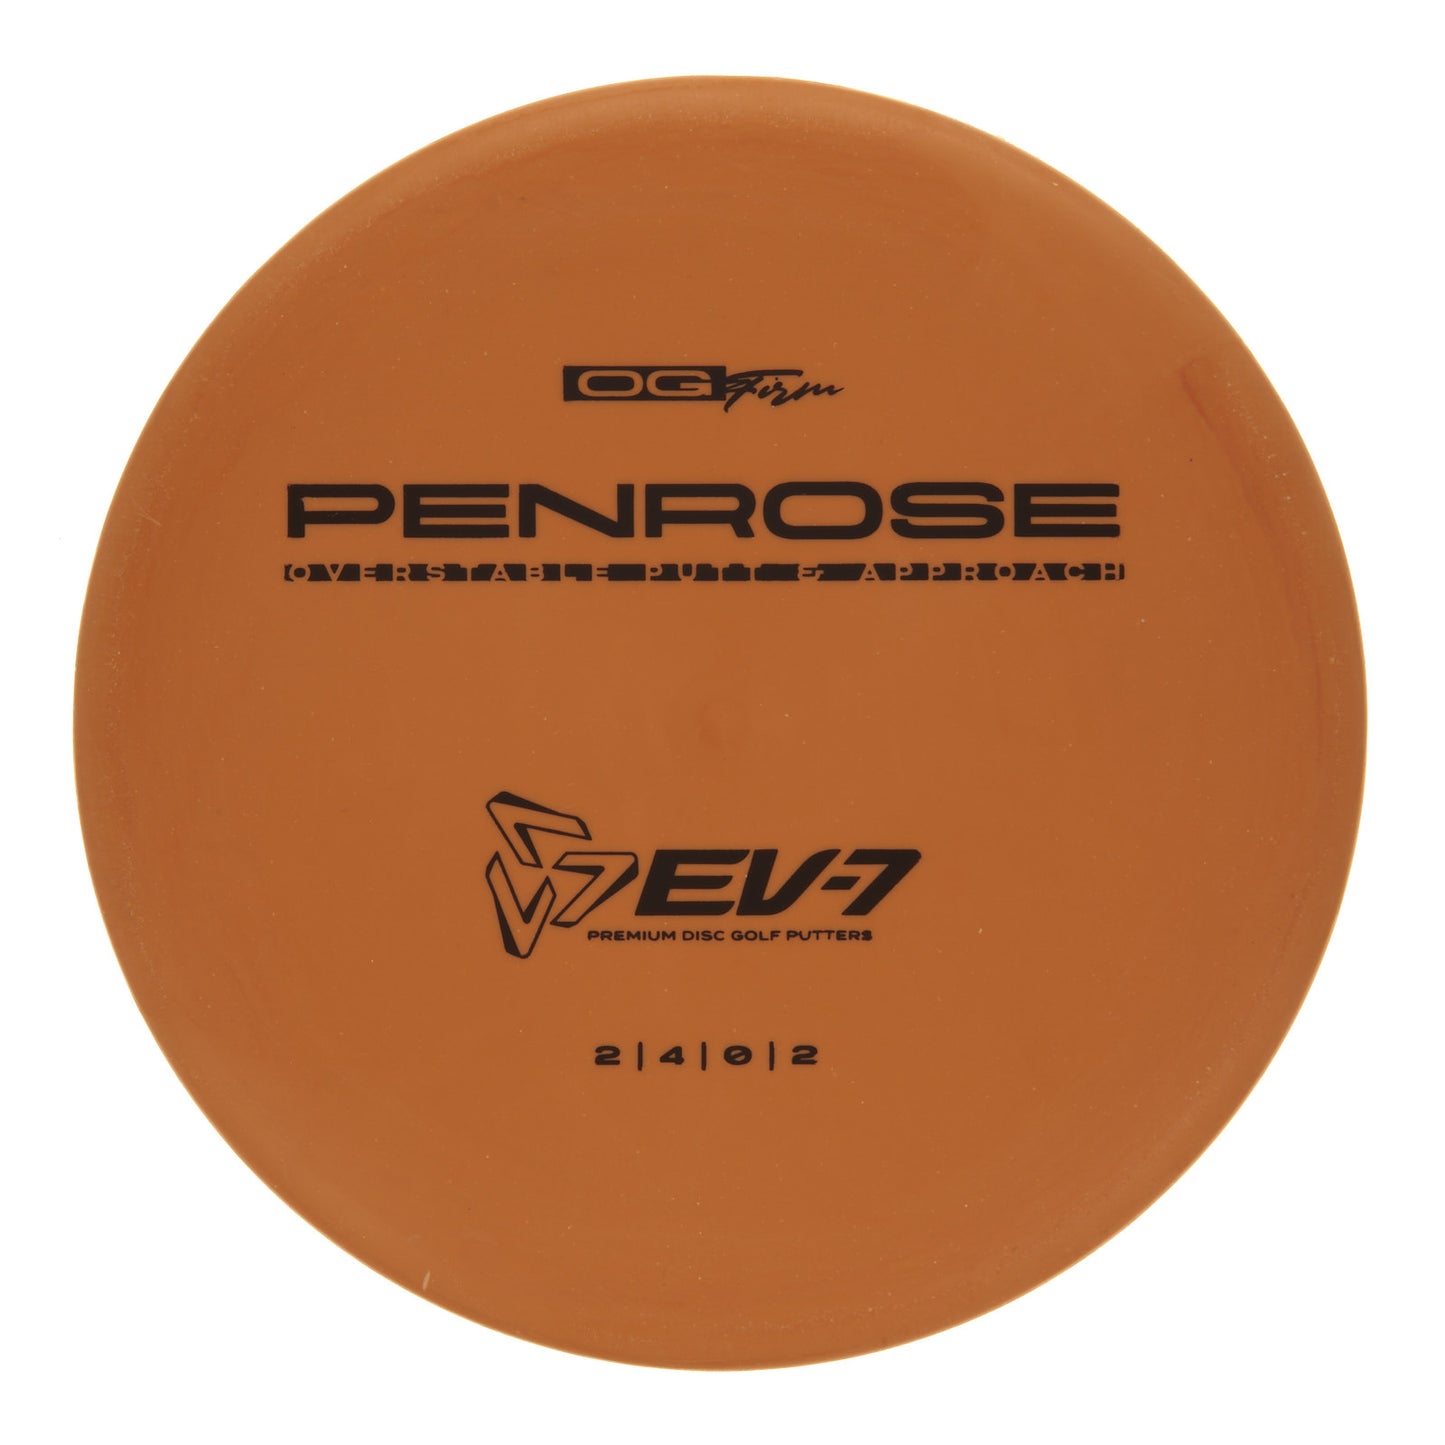 EV-7 Penrose - OG Firm 173g | Style 0006